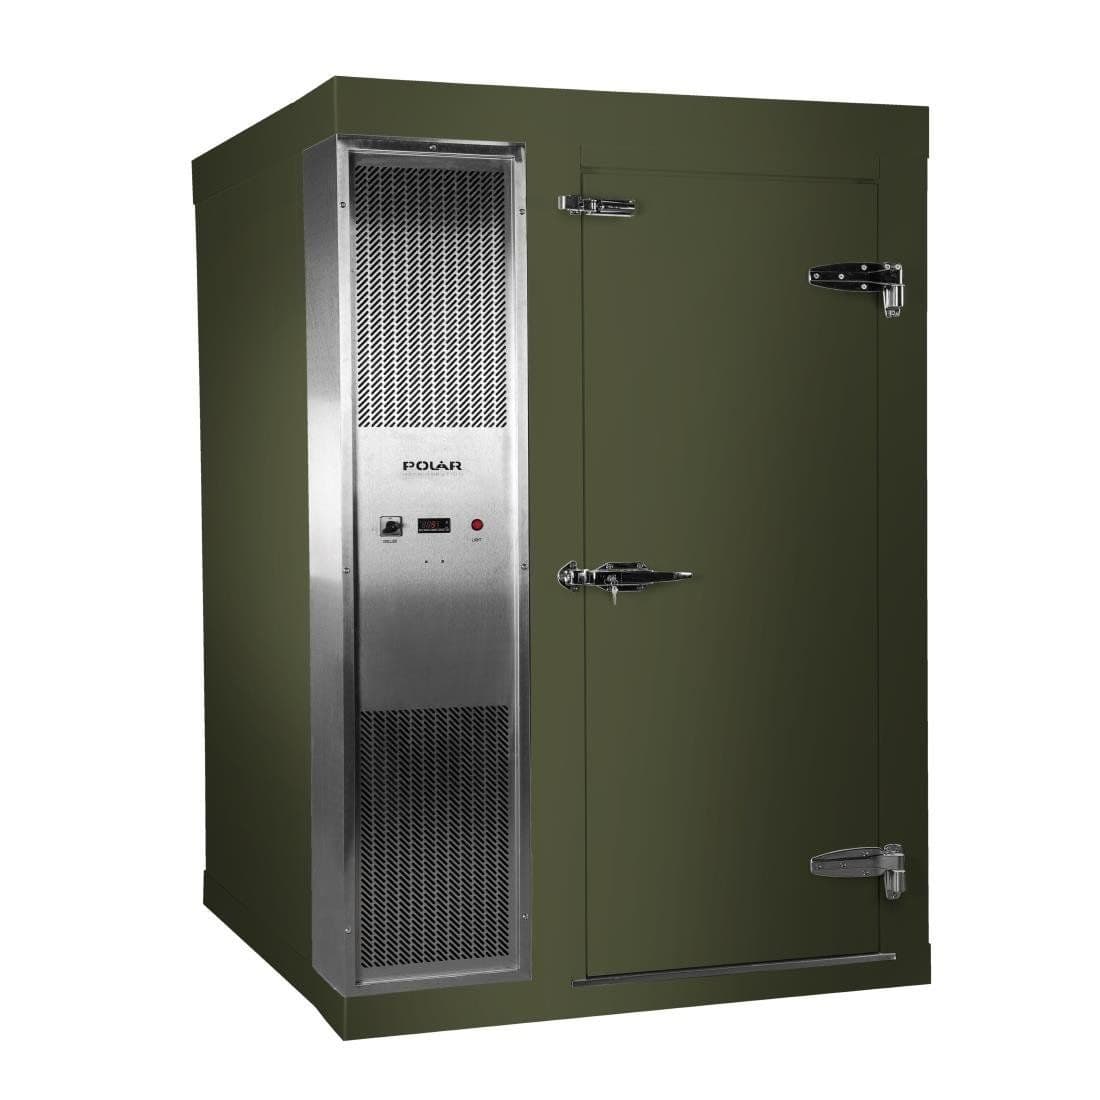 DS483-FGN Polar U-Series 1.5 x 2.1m Integral Walk In Freezer Room Green JD Catering Equipment Solutions Ltd